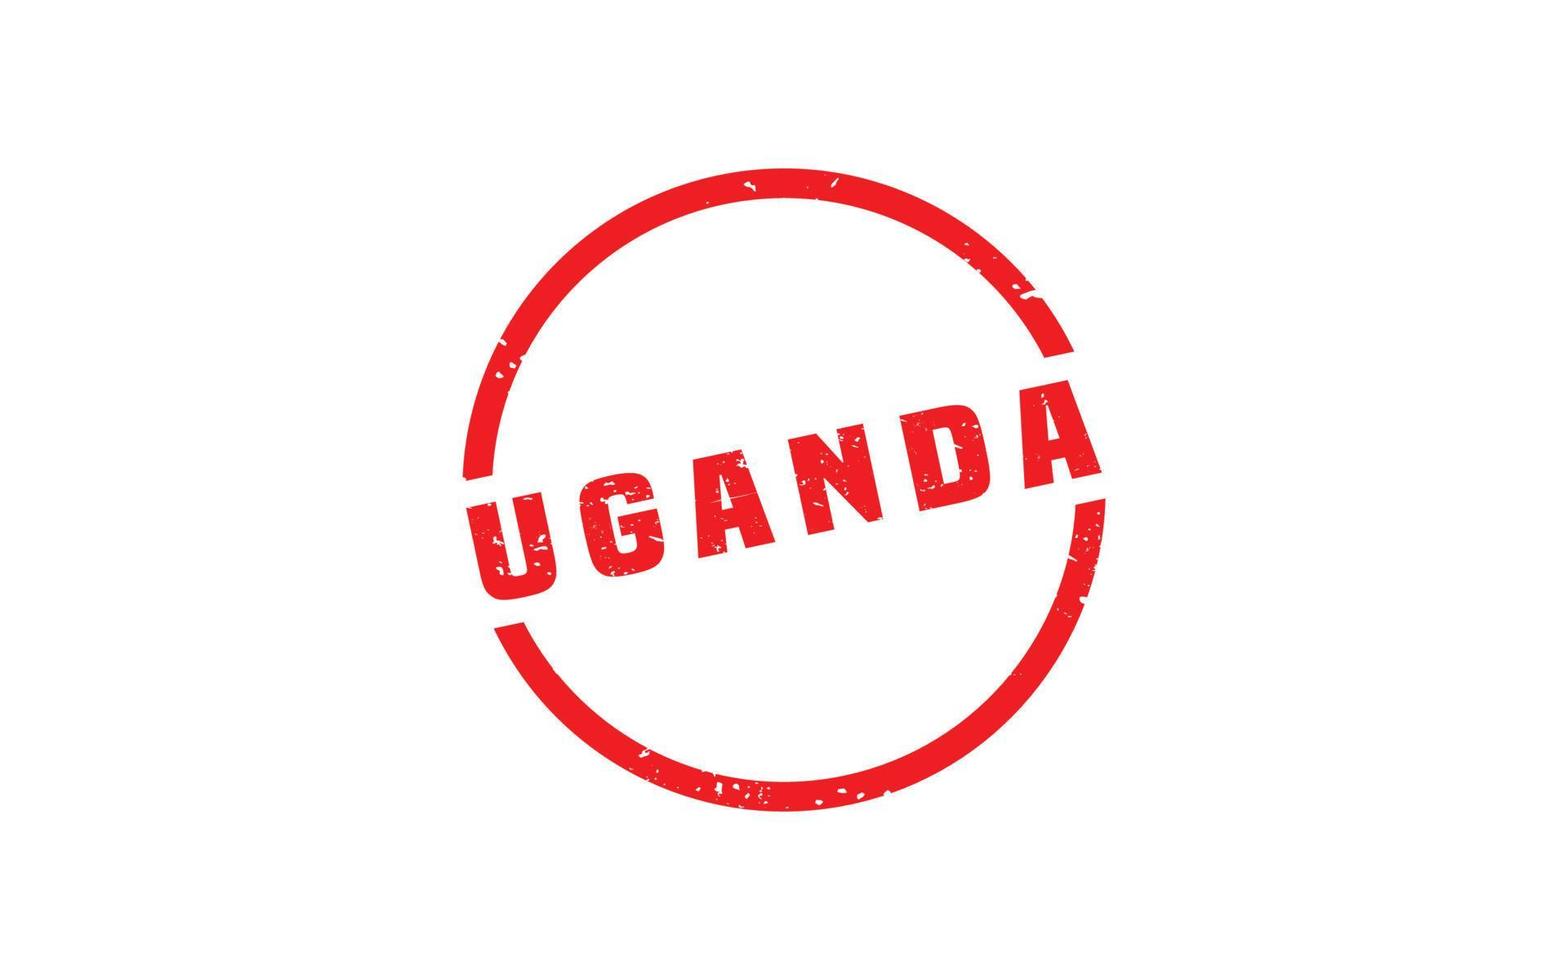 Uganda carimbo borracha com grunge estilo em branco fundo vetor